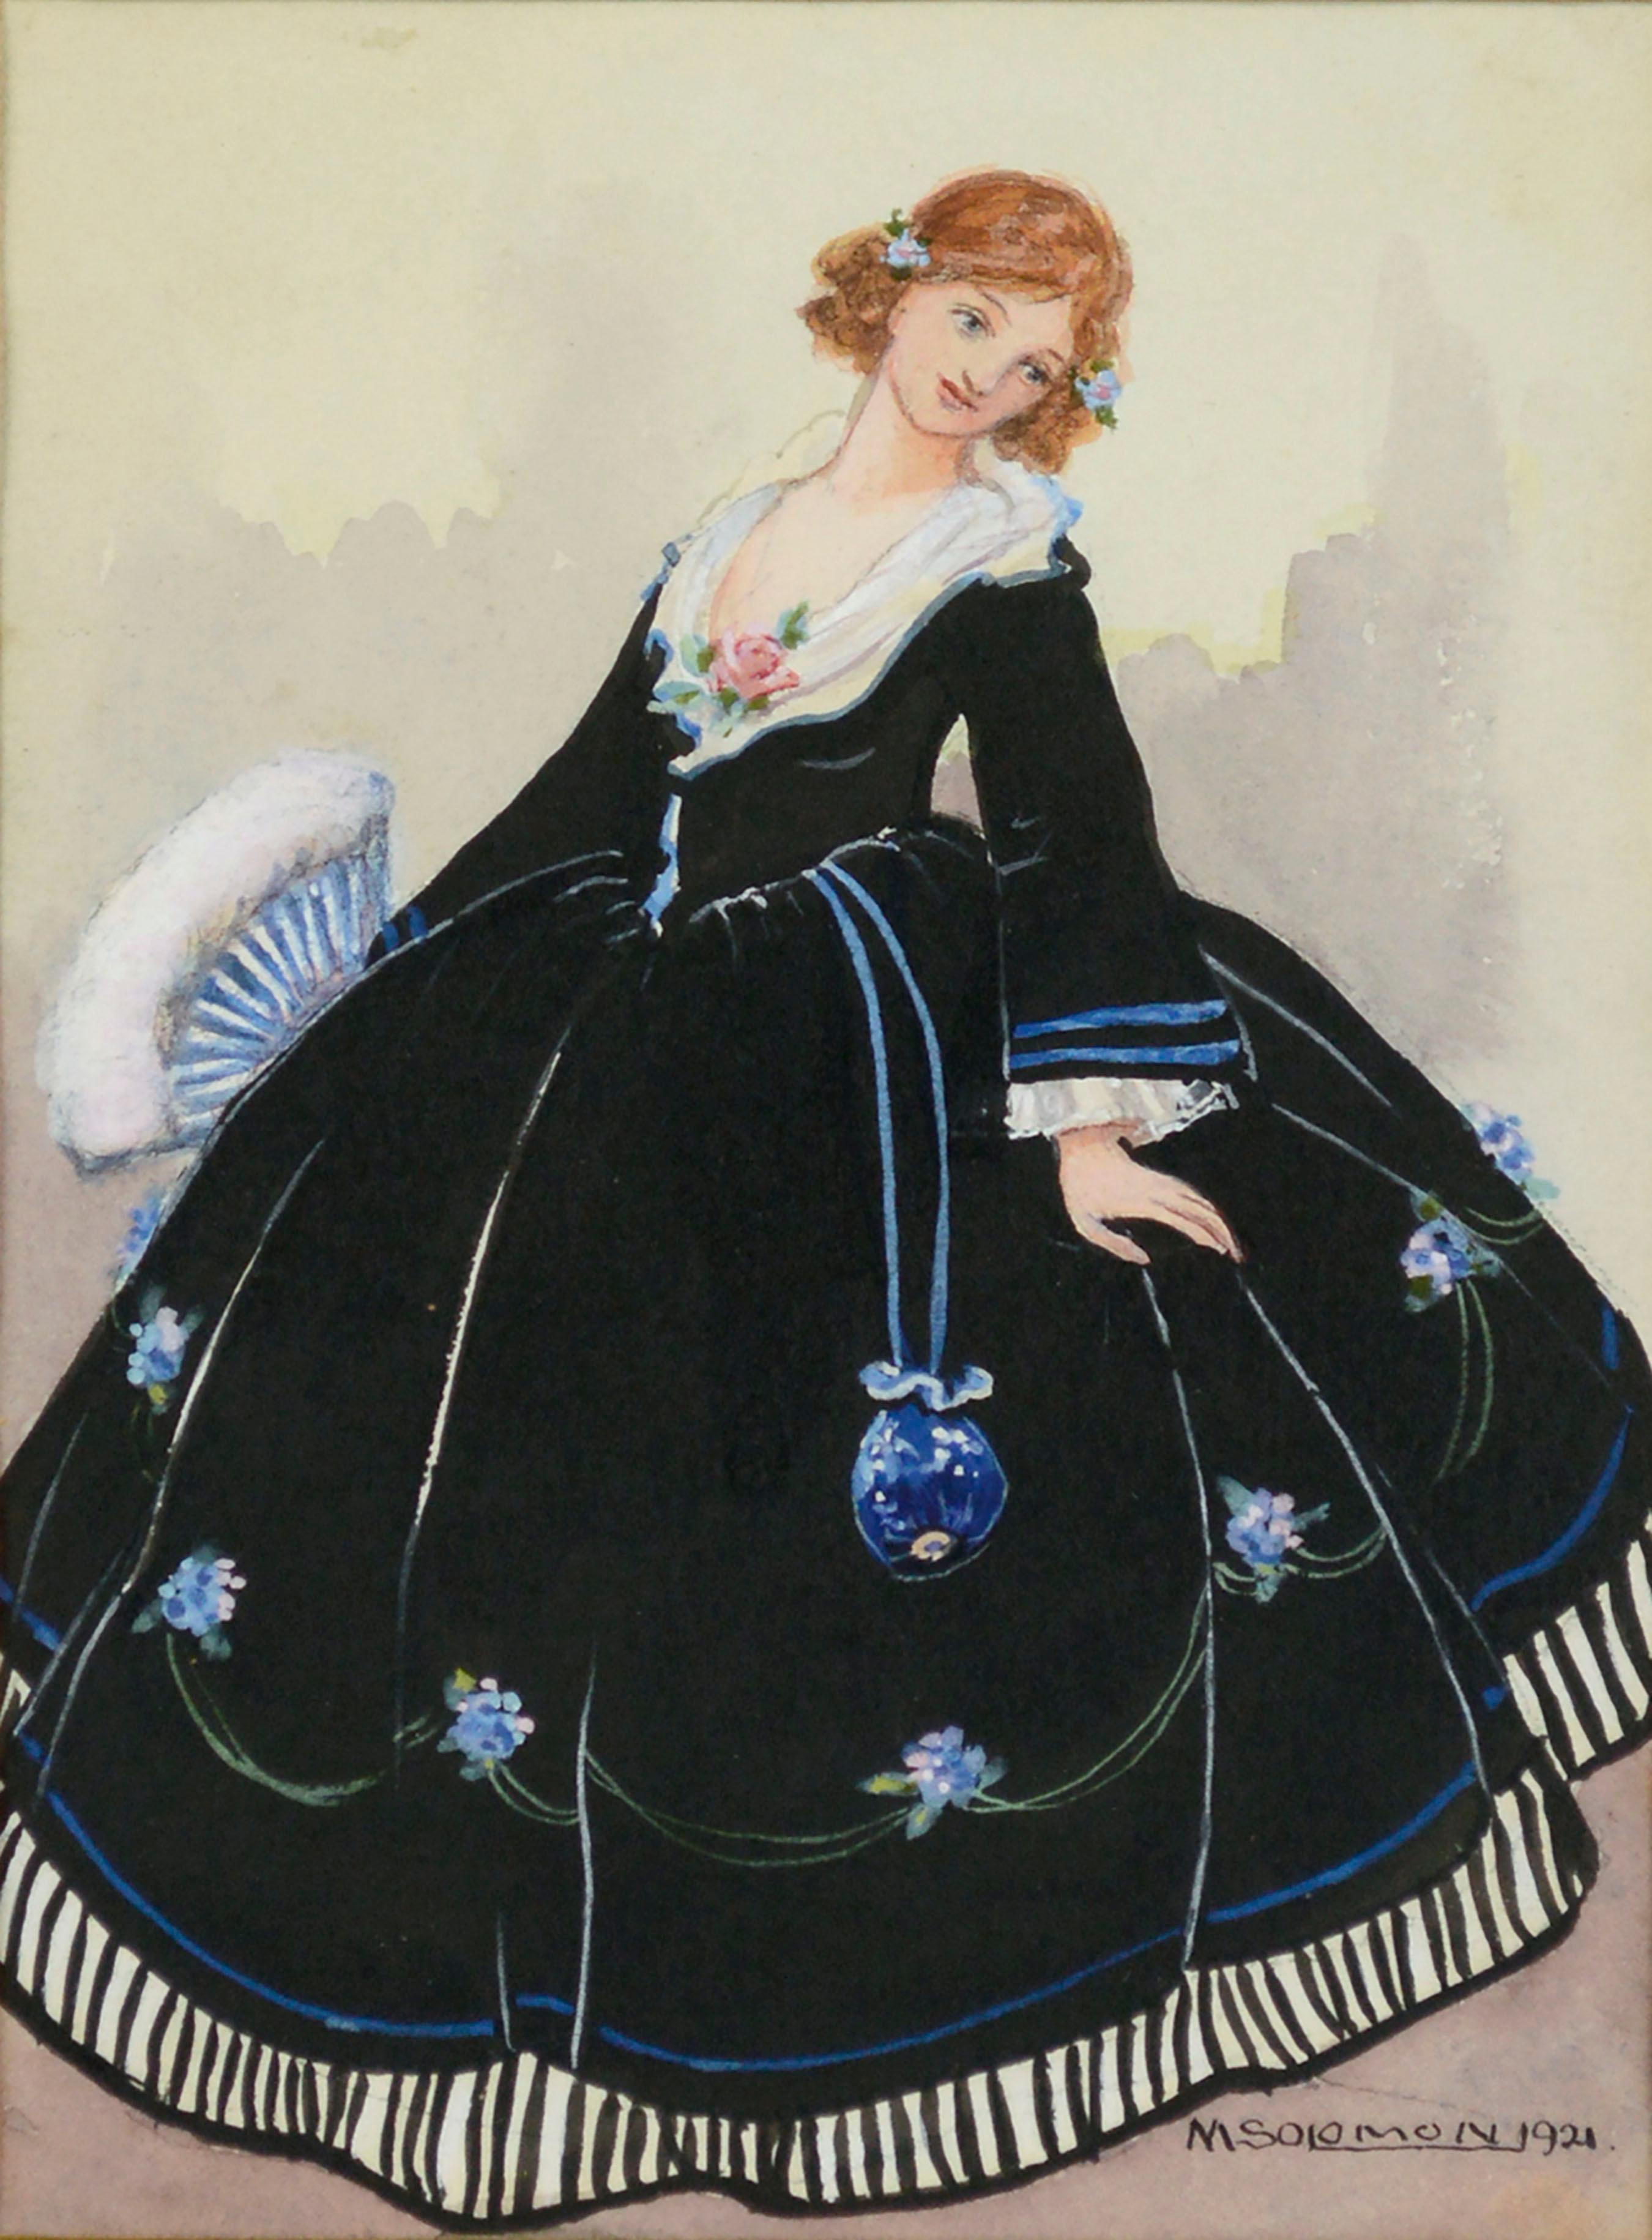 Illustration de mode historique des années 1920 d'une dame en robe du 17e siècle  - Art de M. Solomon